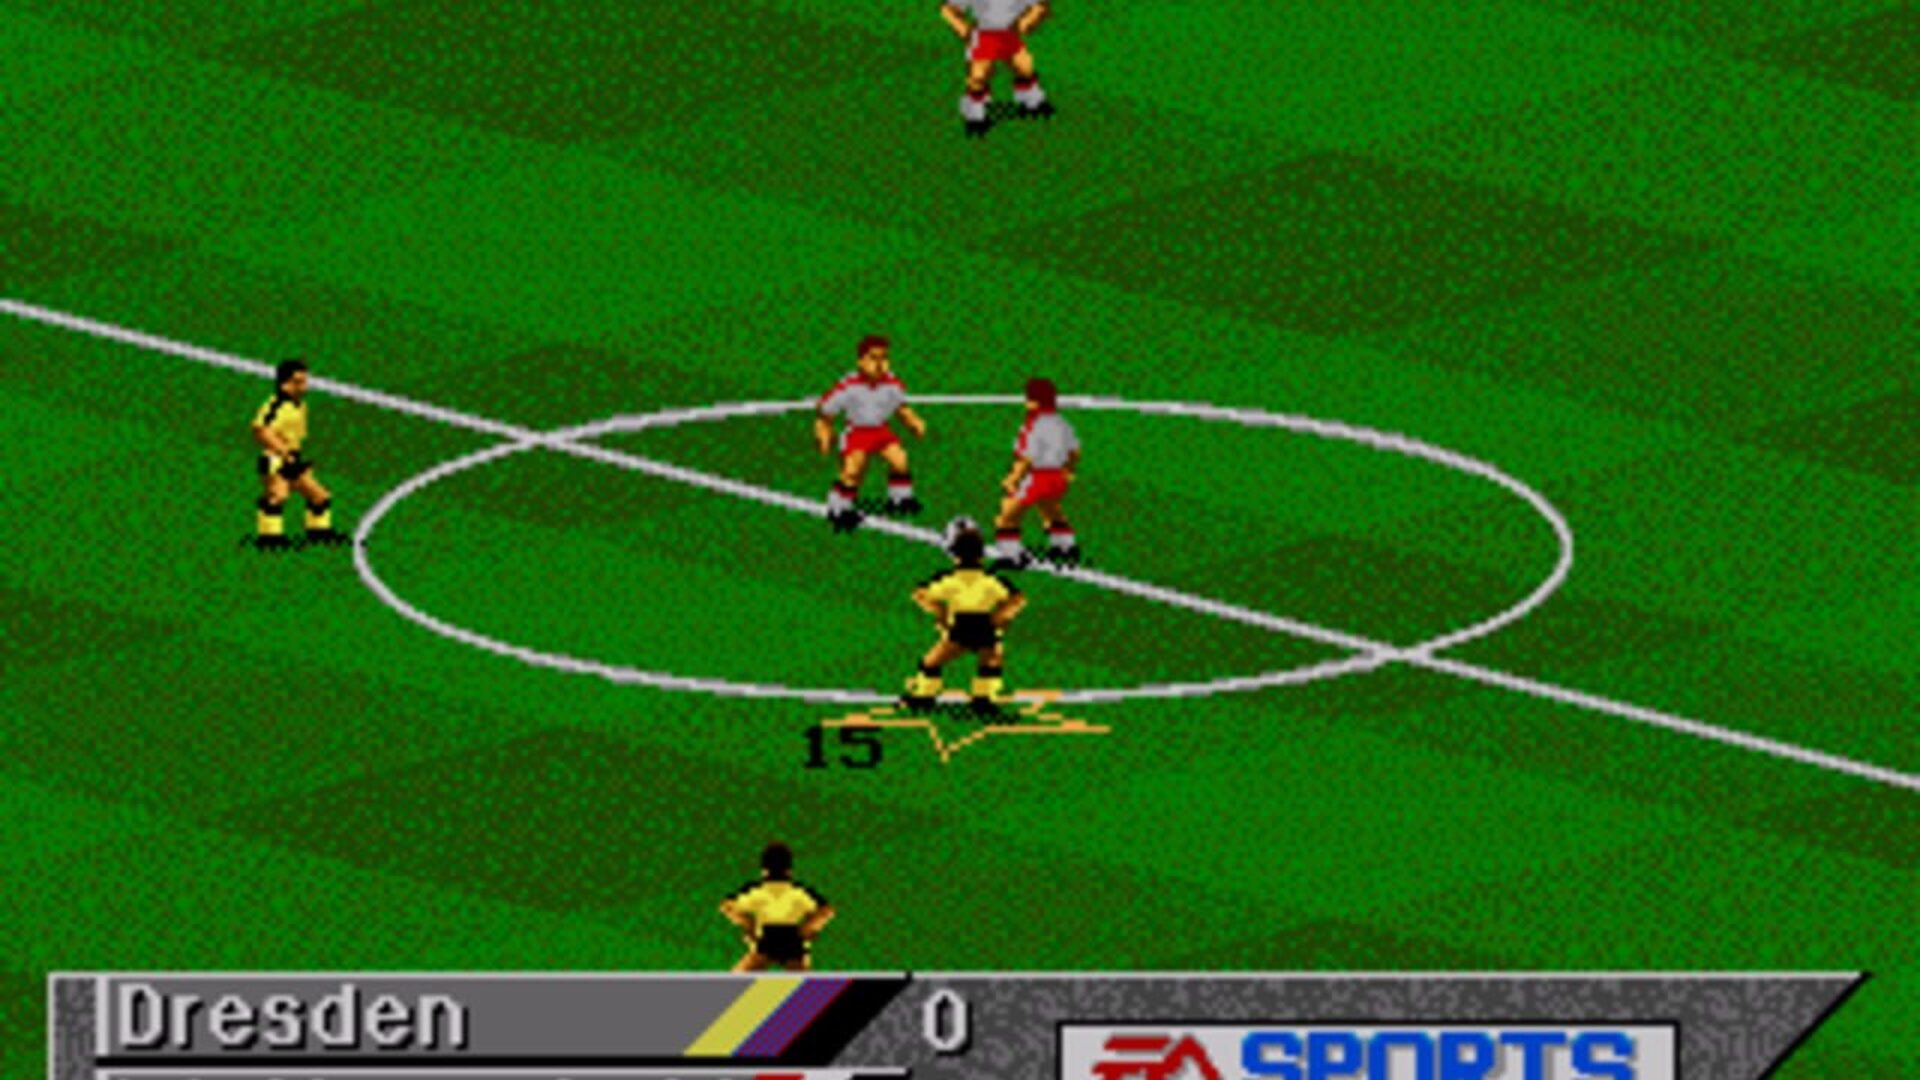 FIFA Soccer 95 (Genesis) Game Download